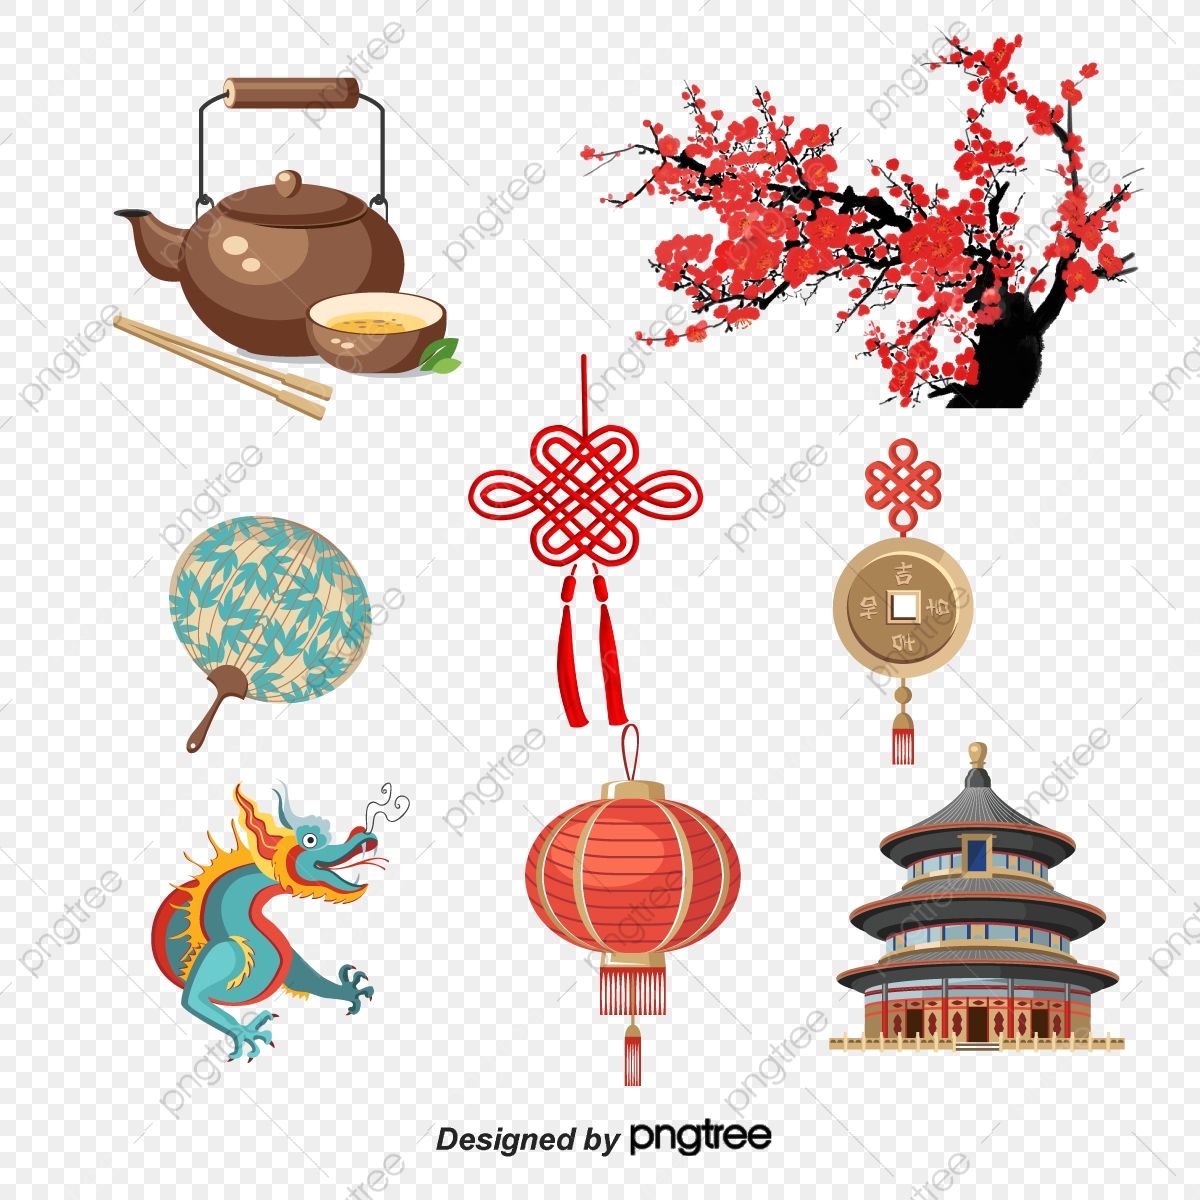 7 biểu tượng văn hóa lớn trong Văn hóa Trung Hoa